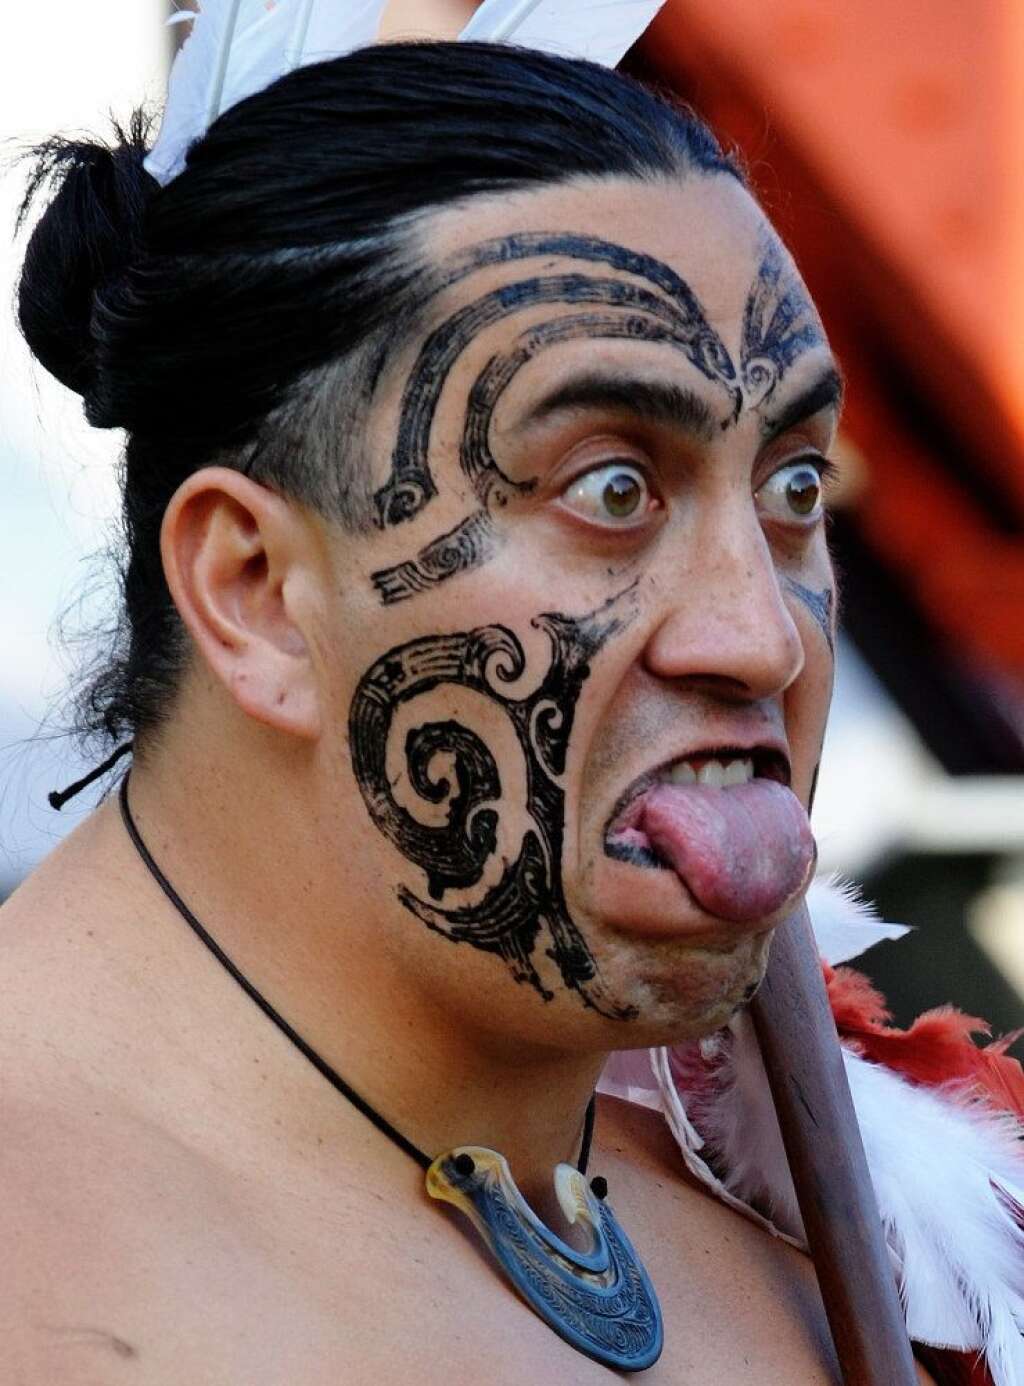 Les tatouages les plus fous - Un guerrier maori pendant le "Powhiri", une cérémonie pour accueillir les visiteurs, octobre 2009.